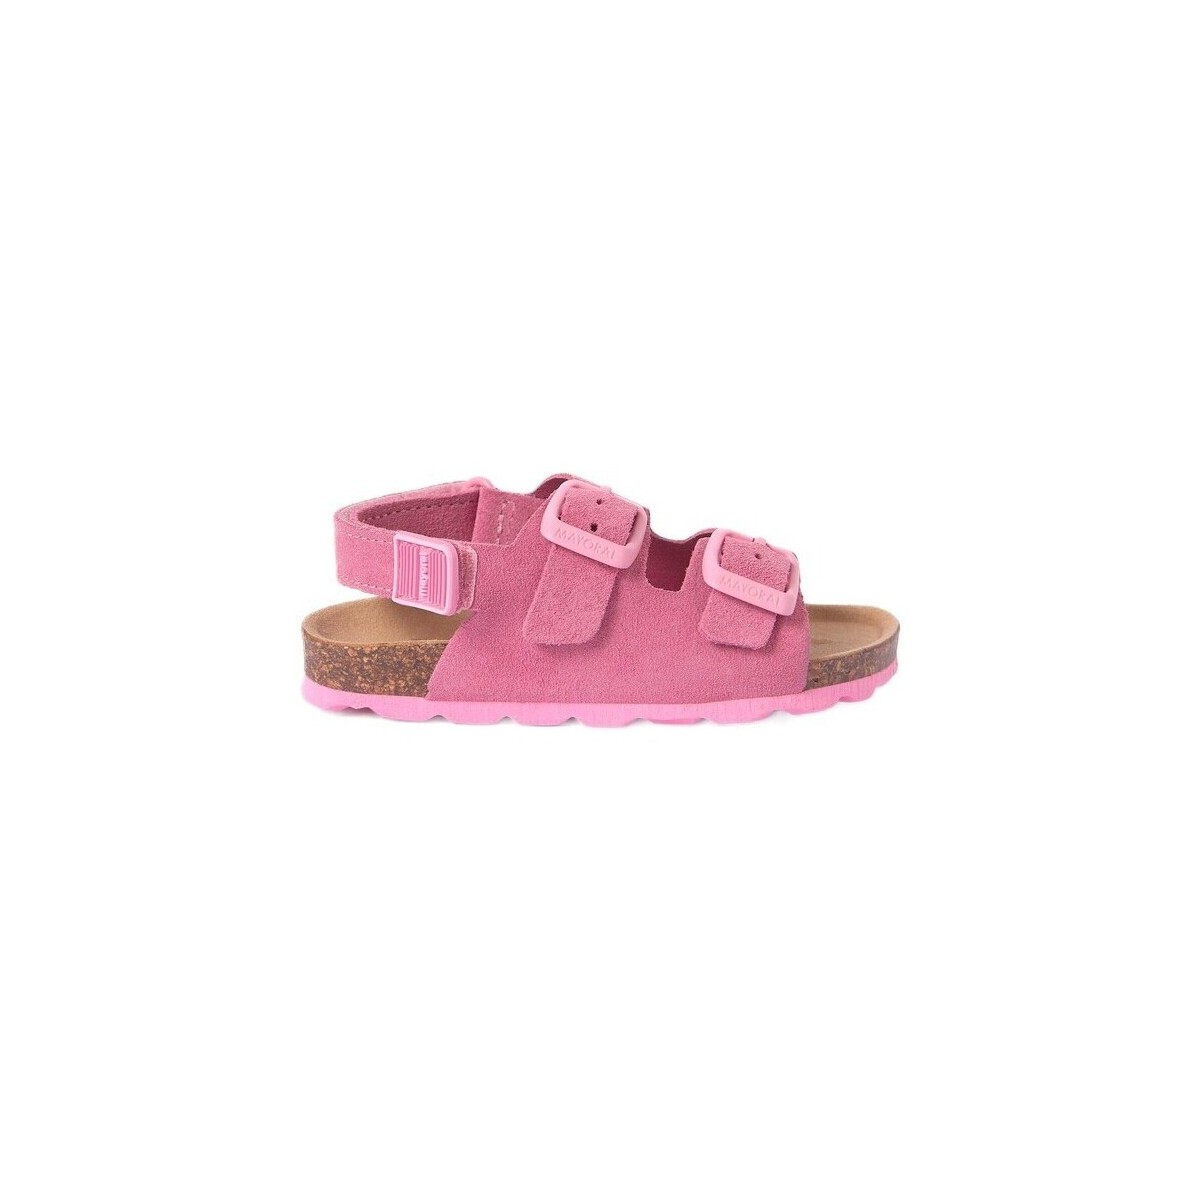 kengät Sandaalit ja avokkaat Mayoral 28236-18 Vaaleanpunainen